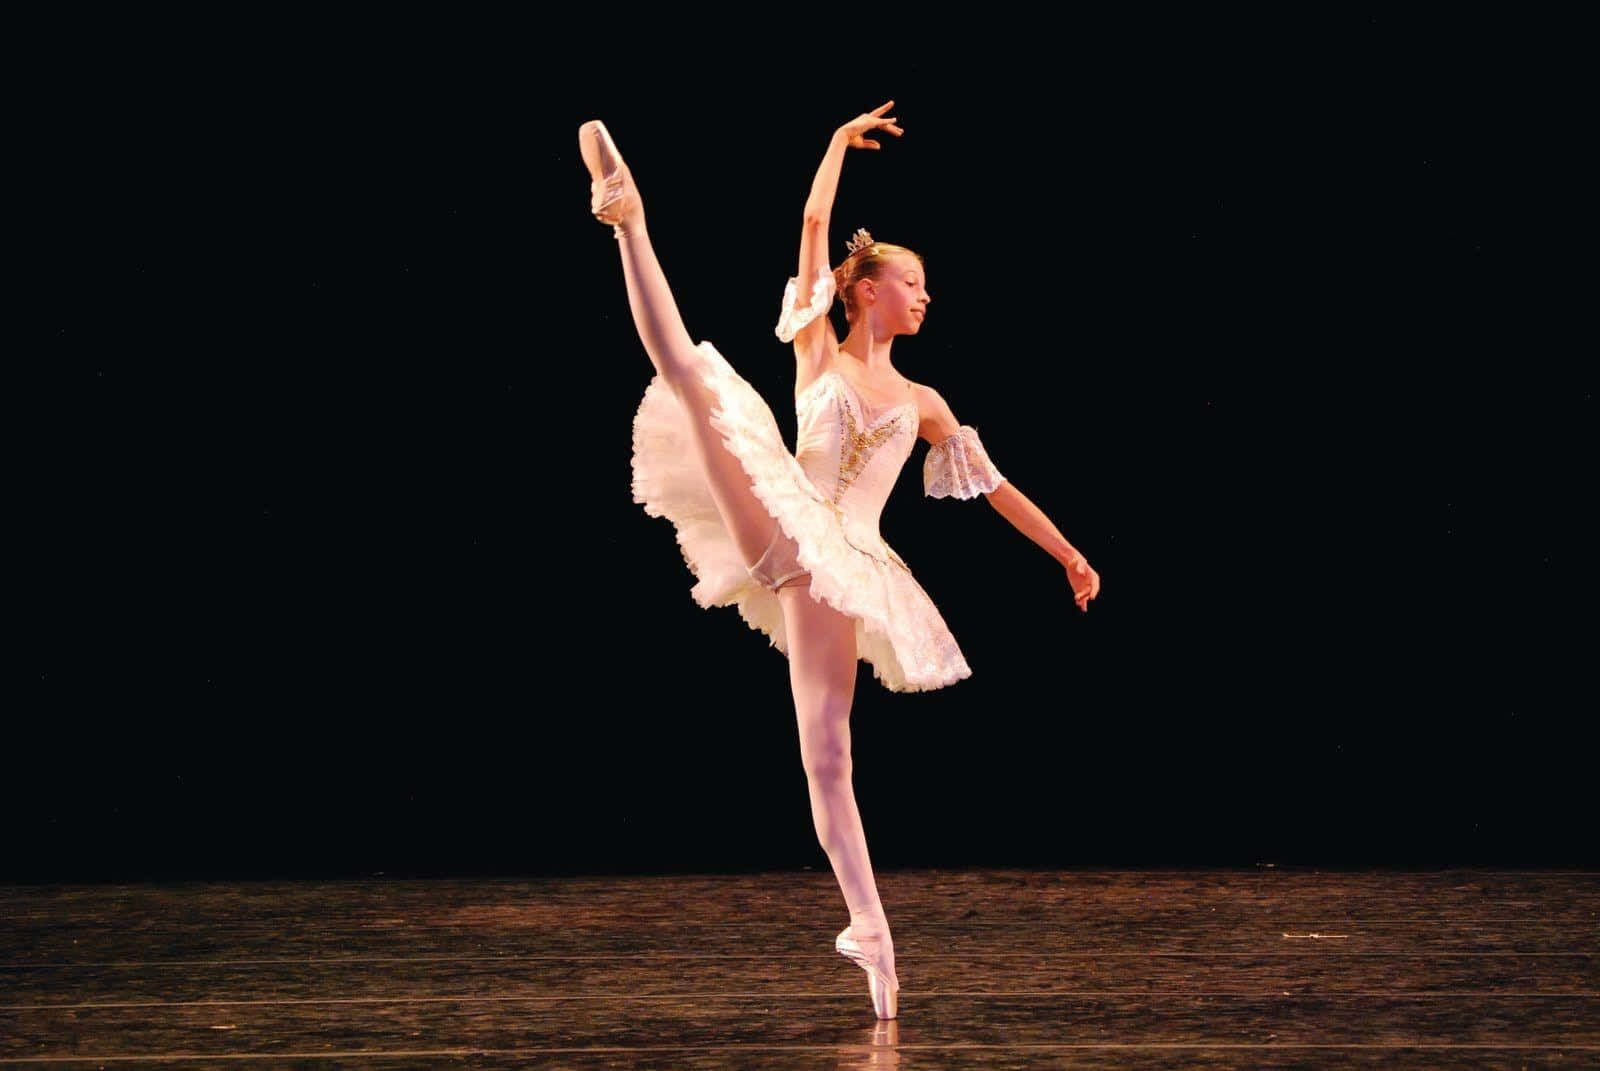 Enung Kvinnlig Balettdansare I Vitt På En Scen